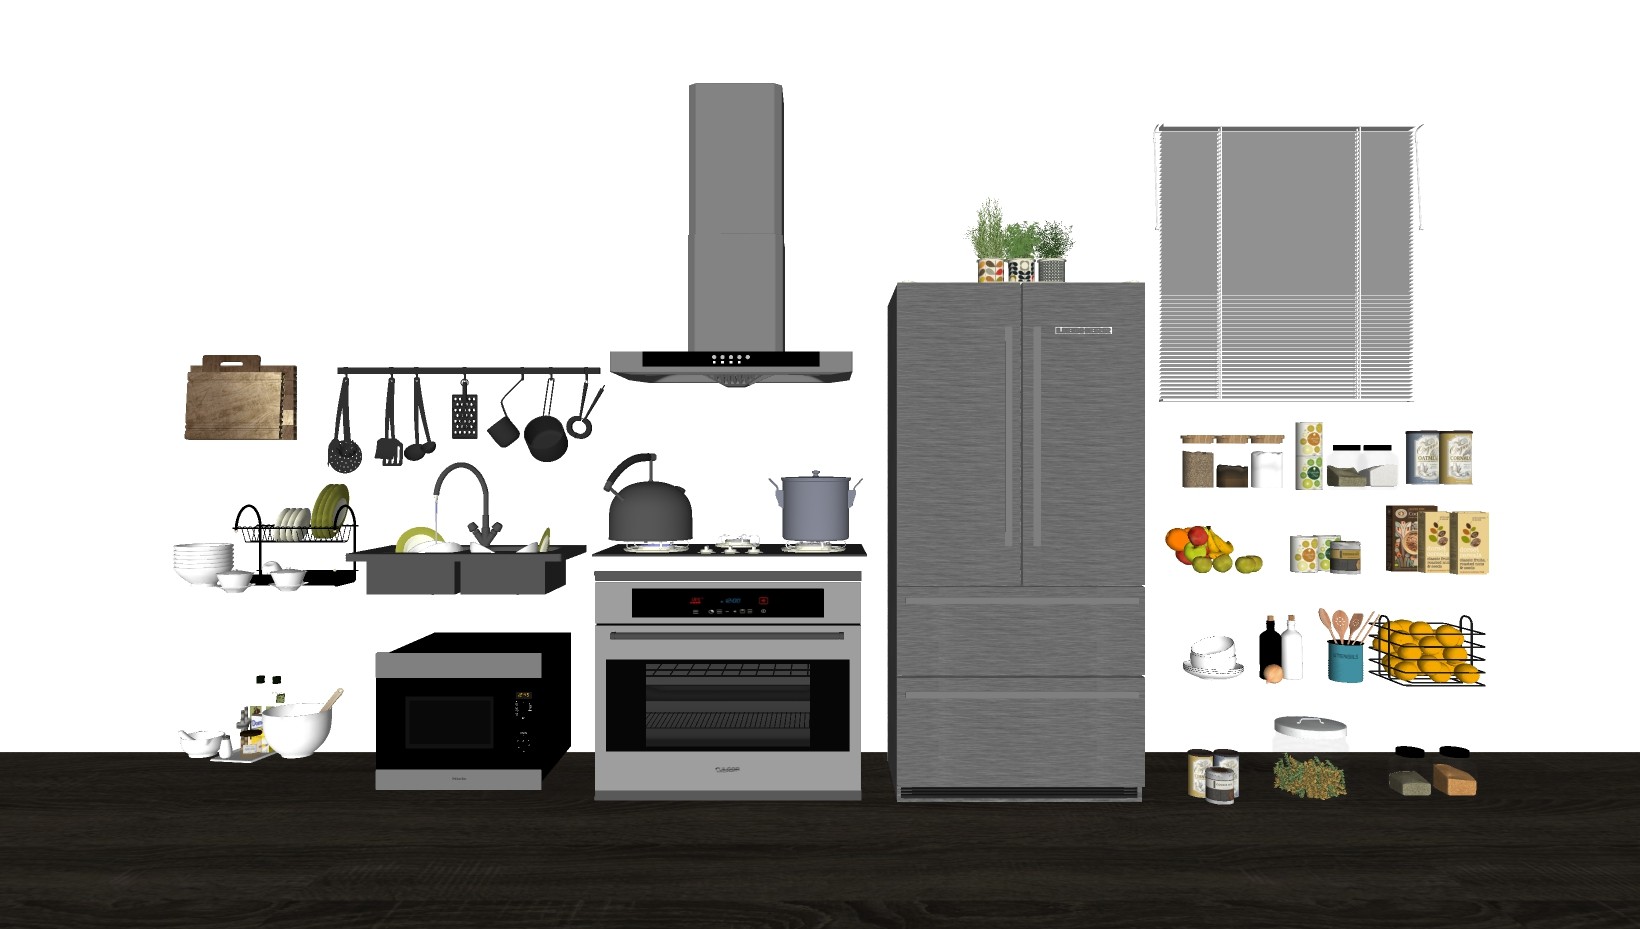 厨房橱柜厨具厨房用品燃气灶冰箱  su草图模型下载